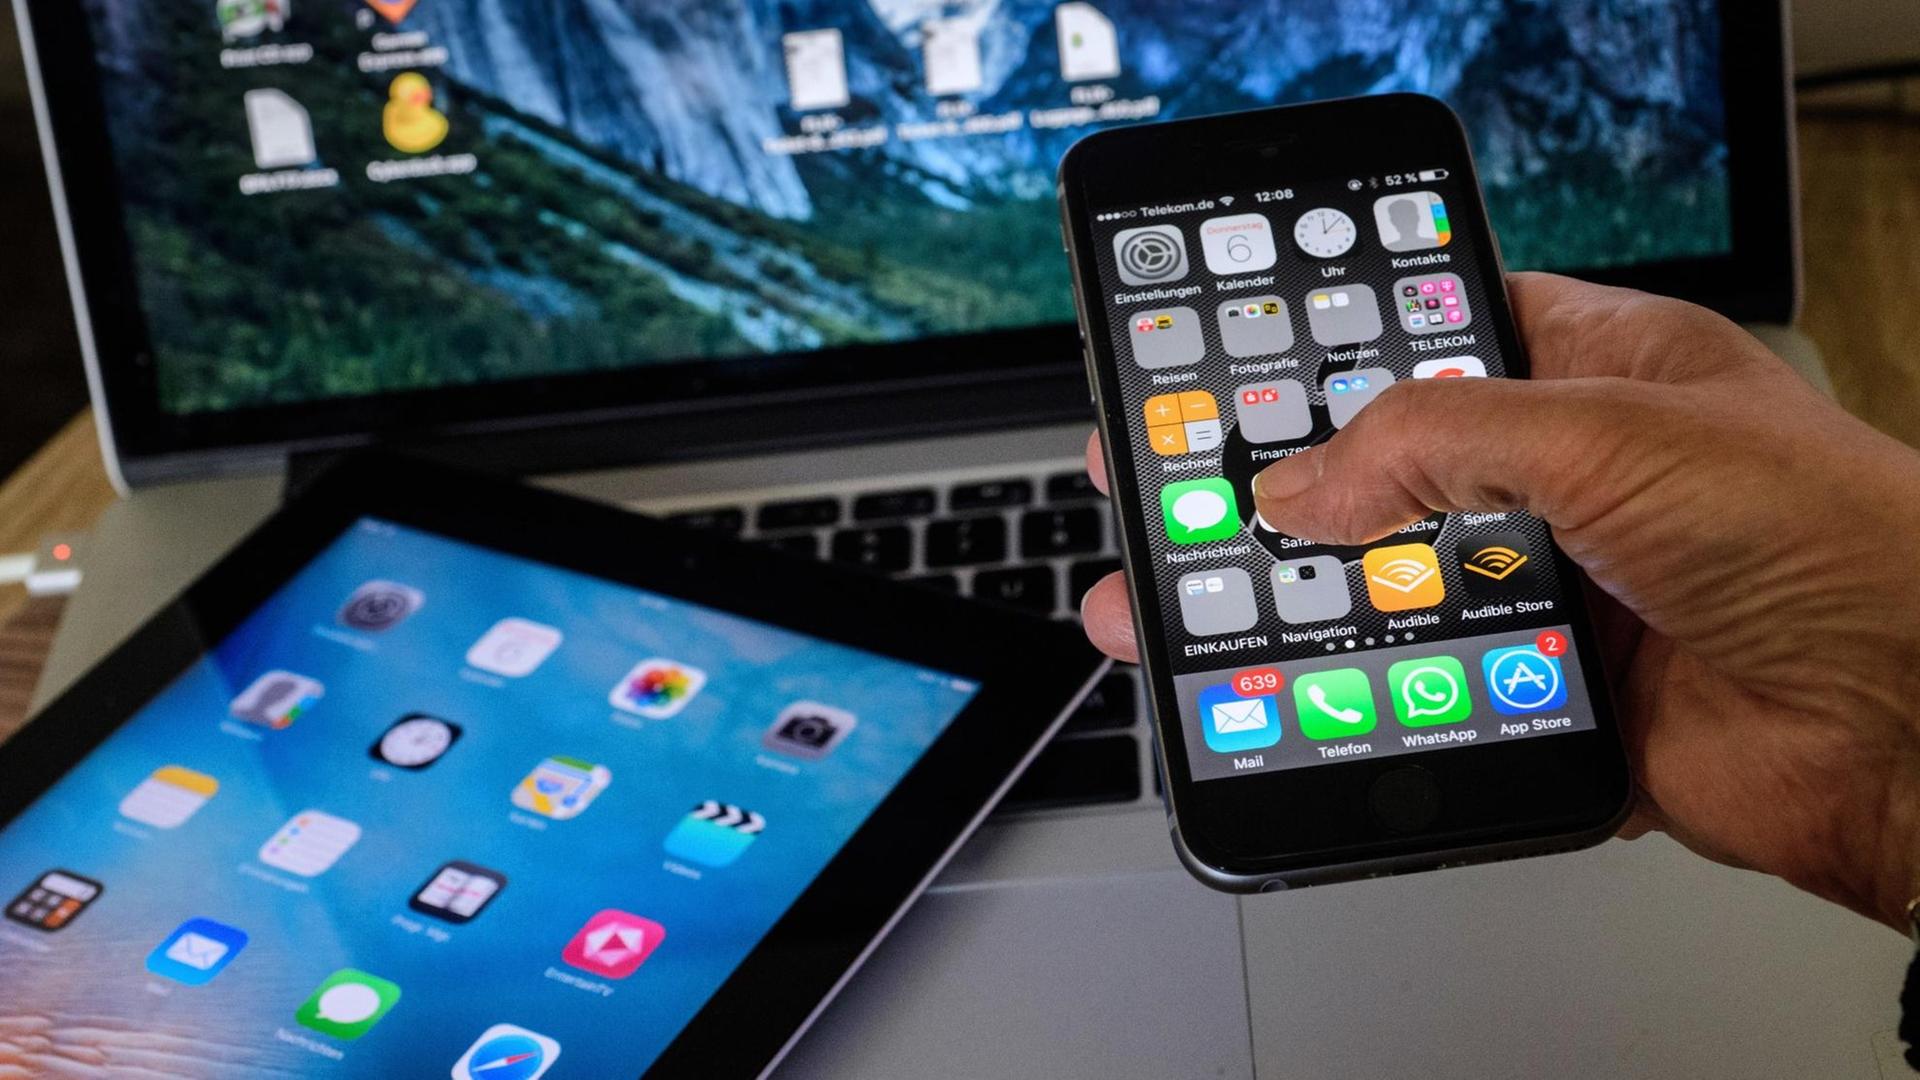 Ein ipad und ein iphone mit buntem Display auf dem verschiedene Apps zu sehen sind.